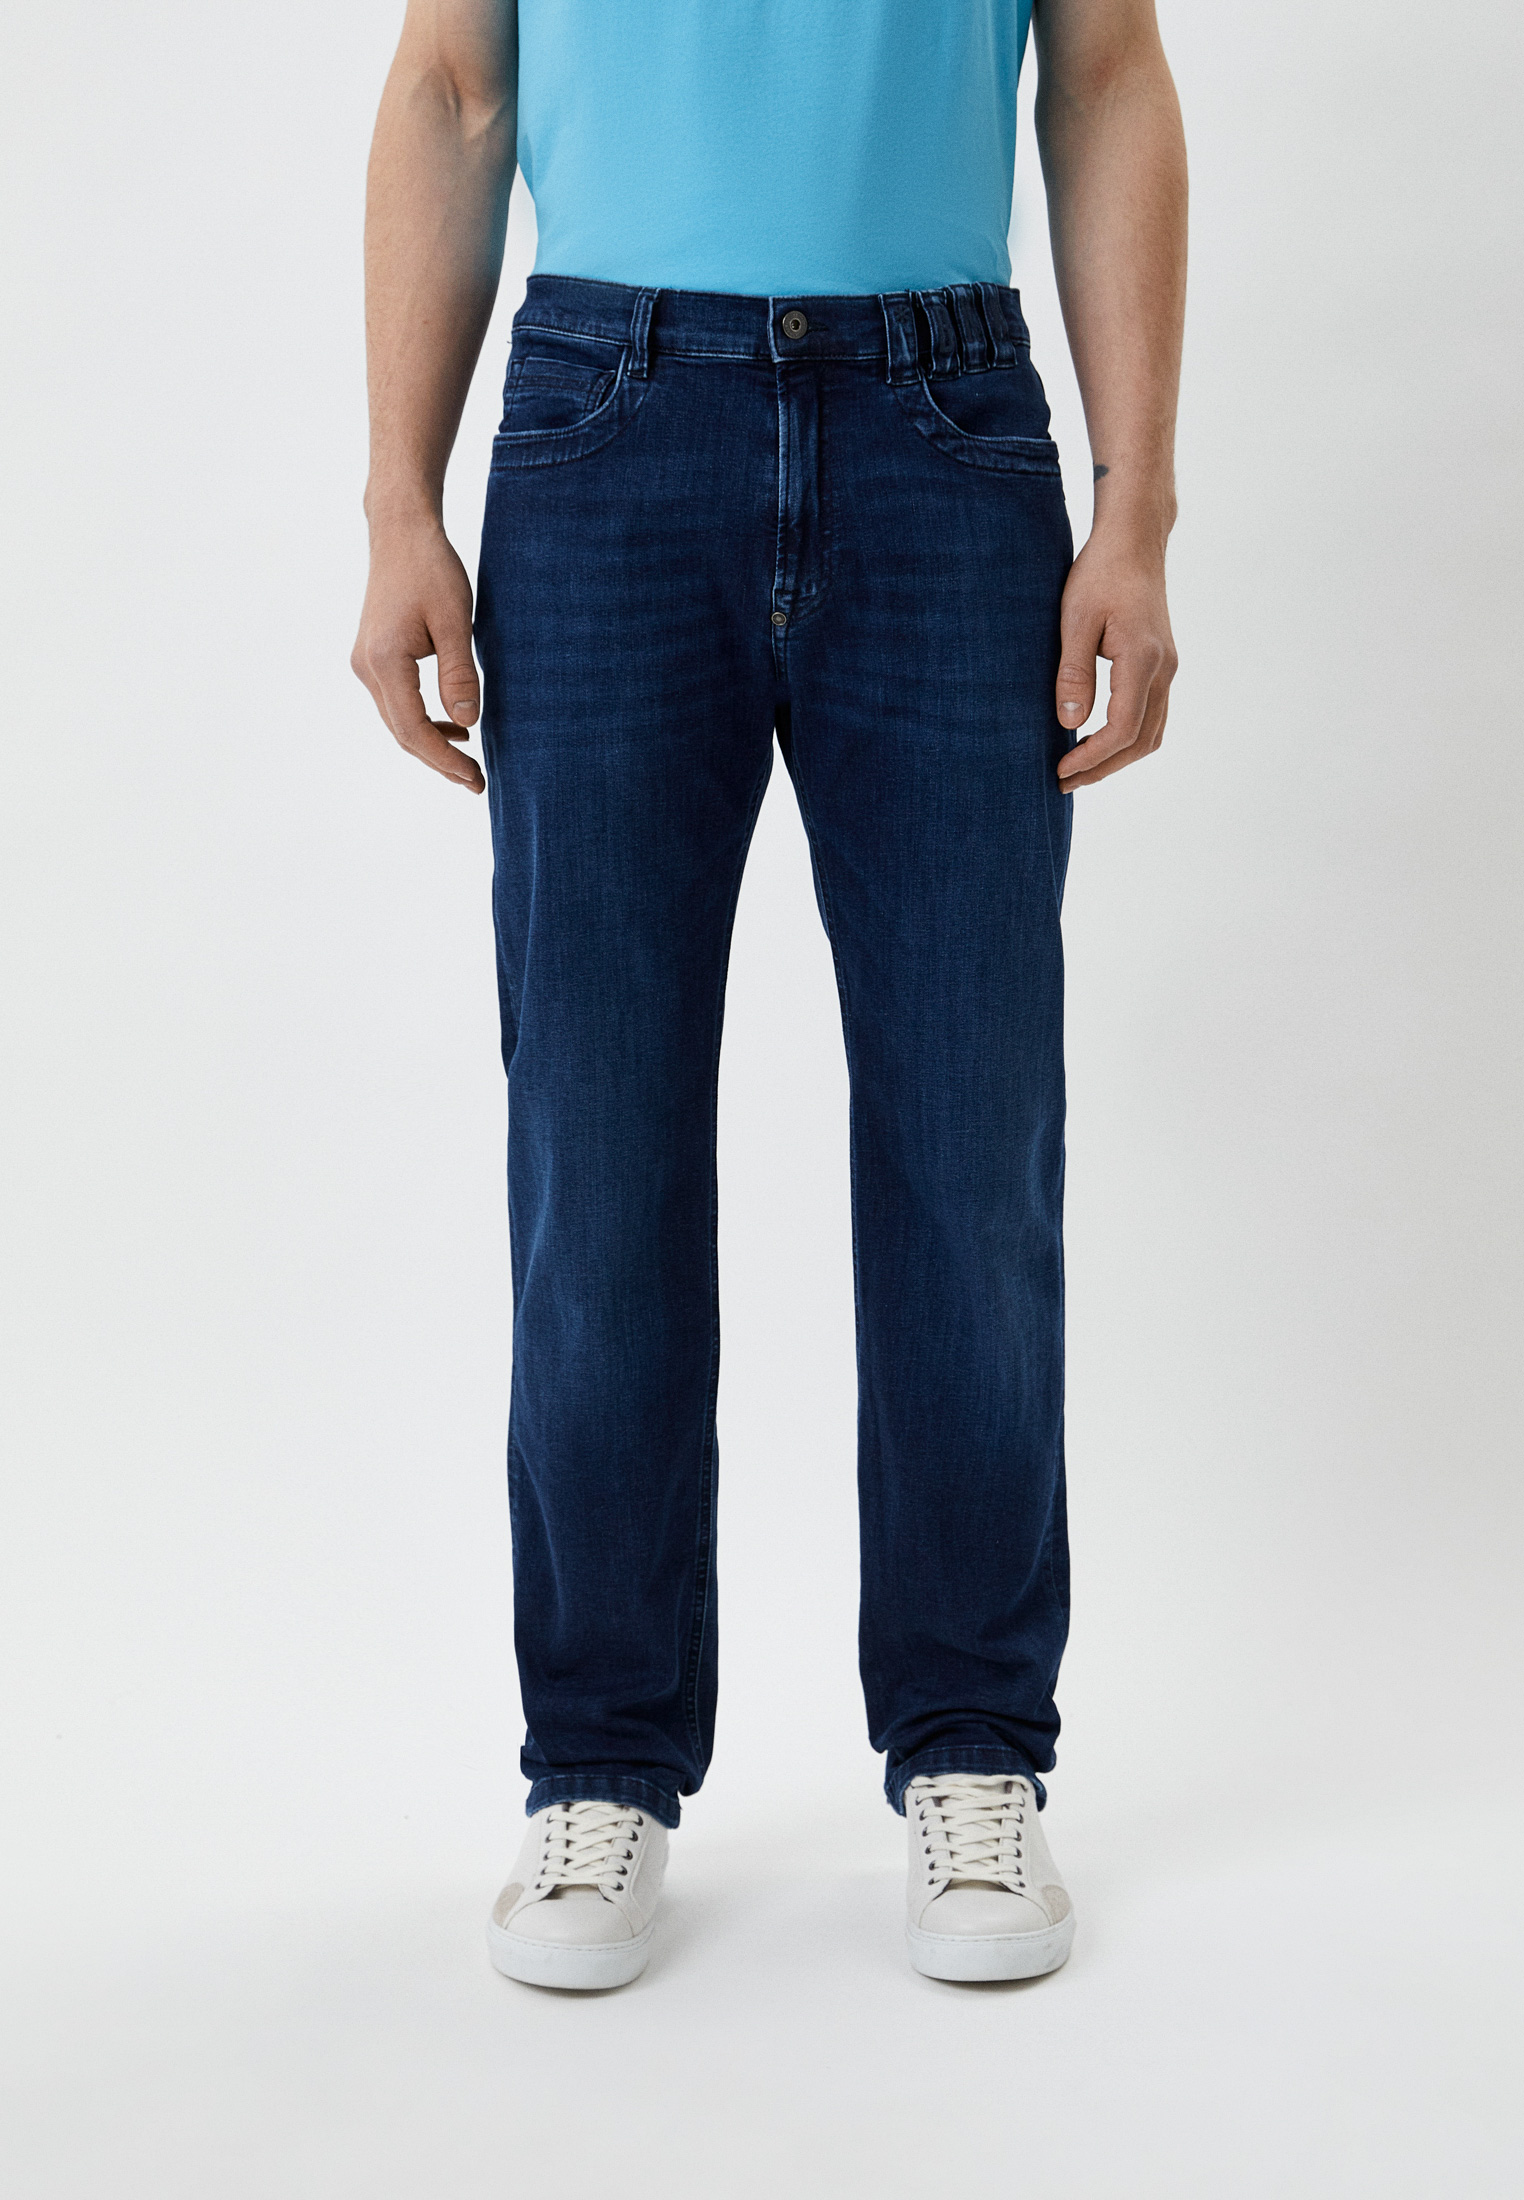 Мужские прямые джинсы Bikkembergs (Биккембергс) CQ11301S3511: изображение 1